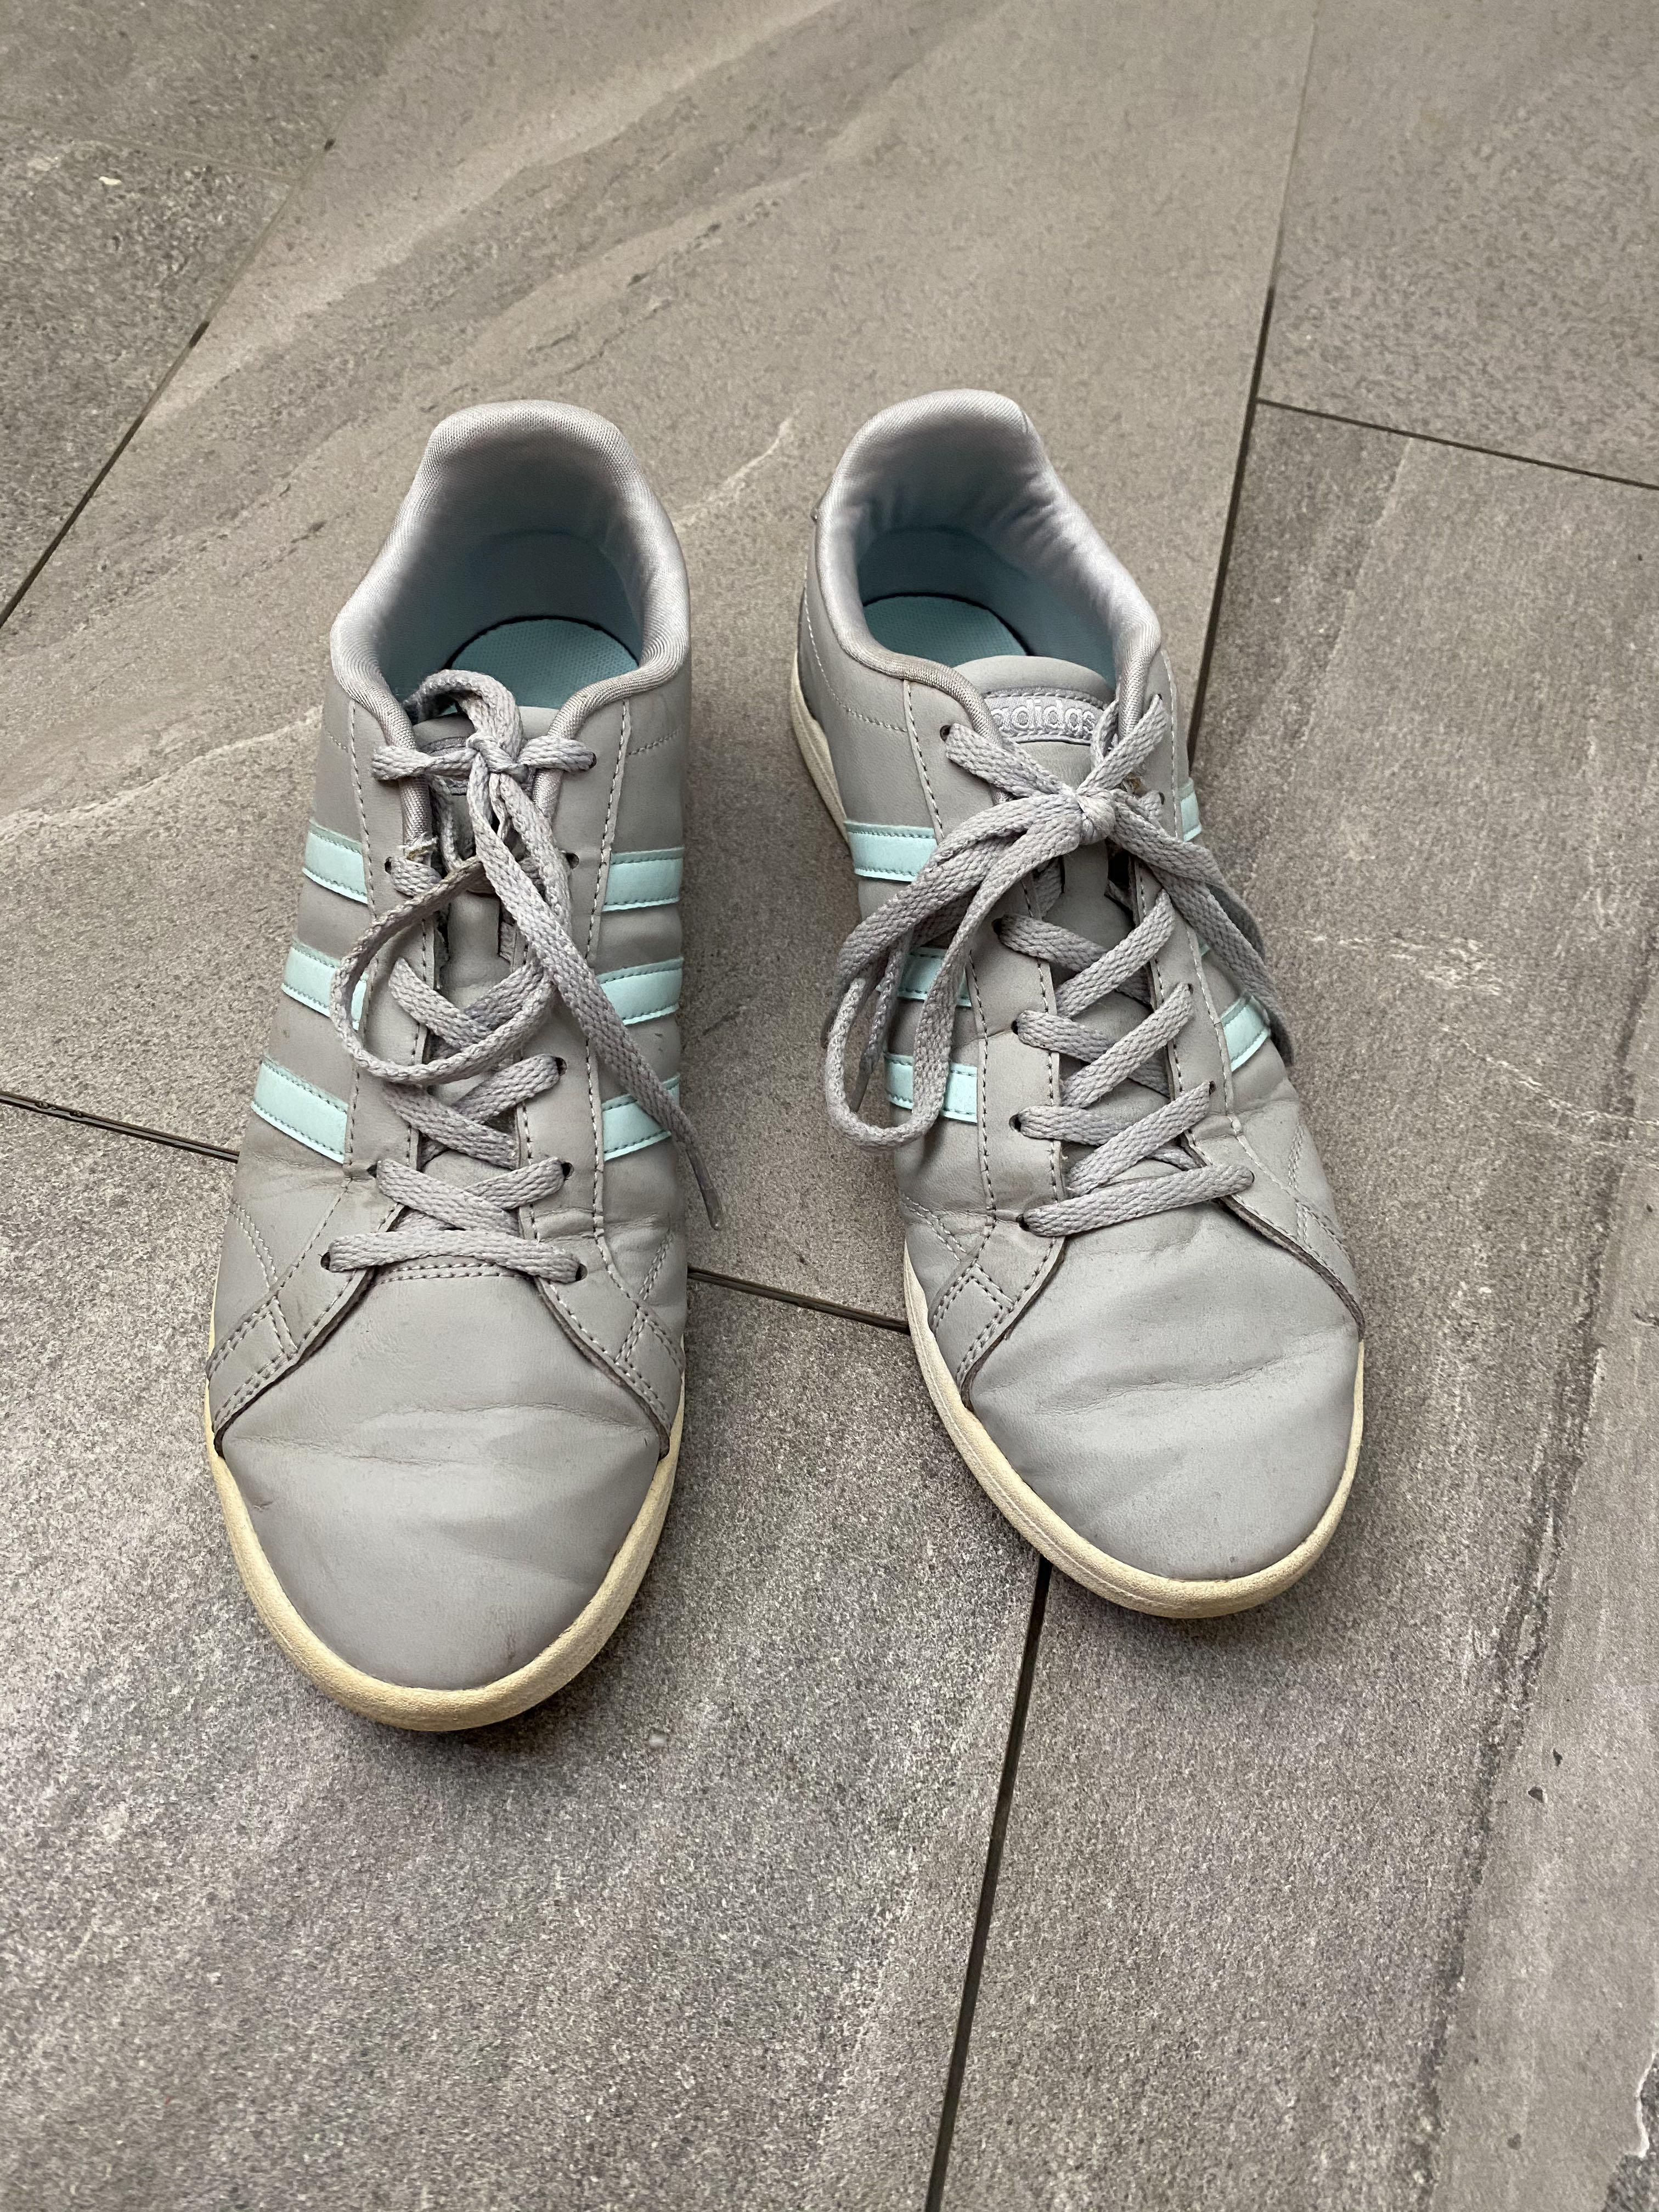 adidas grey stripe shoes